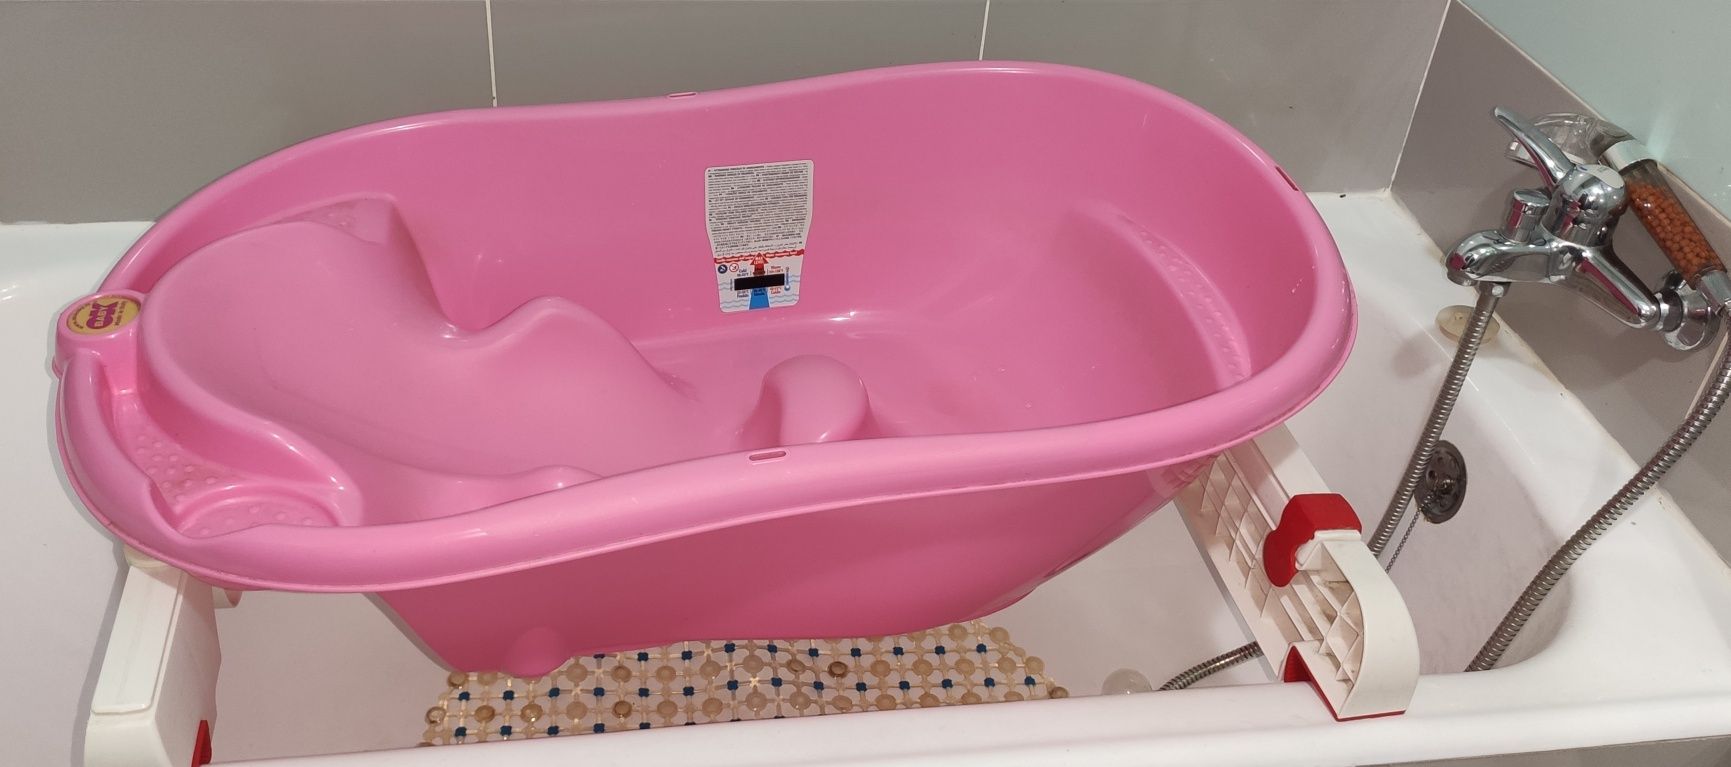 Banheira de bebé Ok baby rosa + suportes banheira